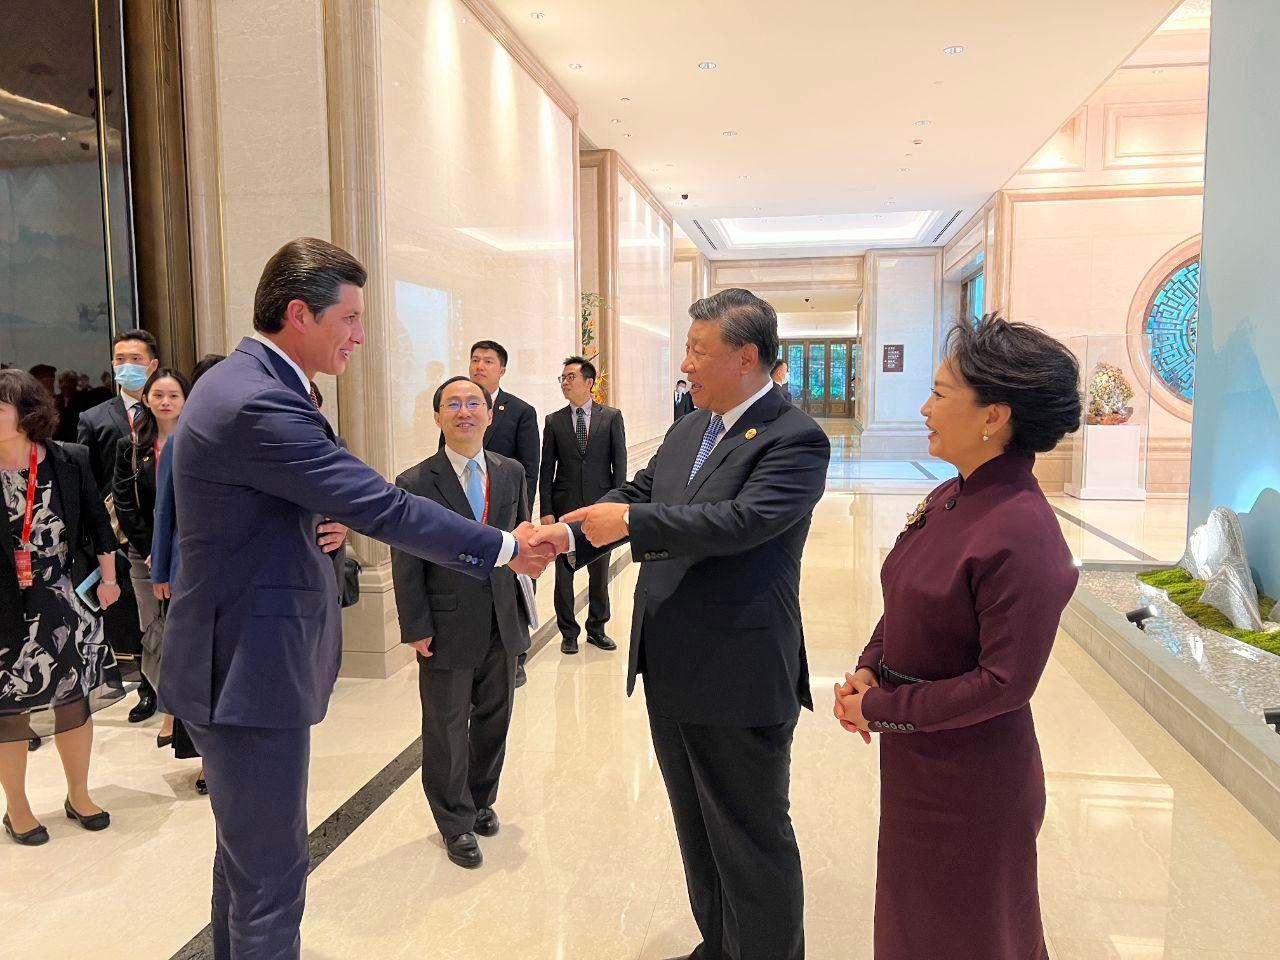 Отабек Умаров встретился с Си Цзиньпином и его женой  госпожой Пэн Лиюань в Ханчжоу